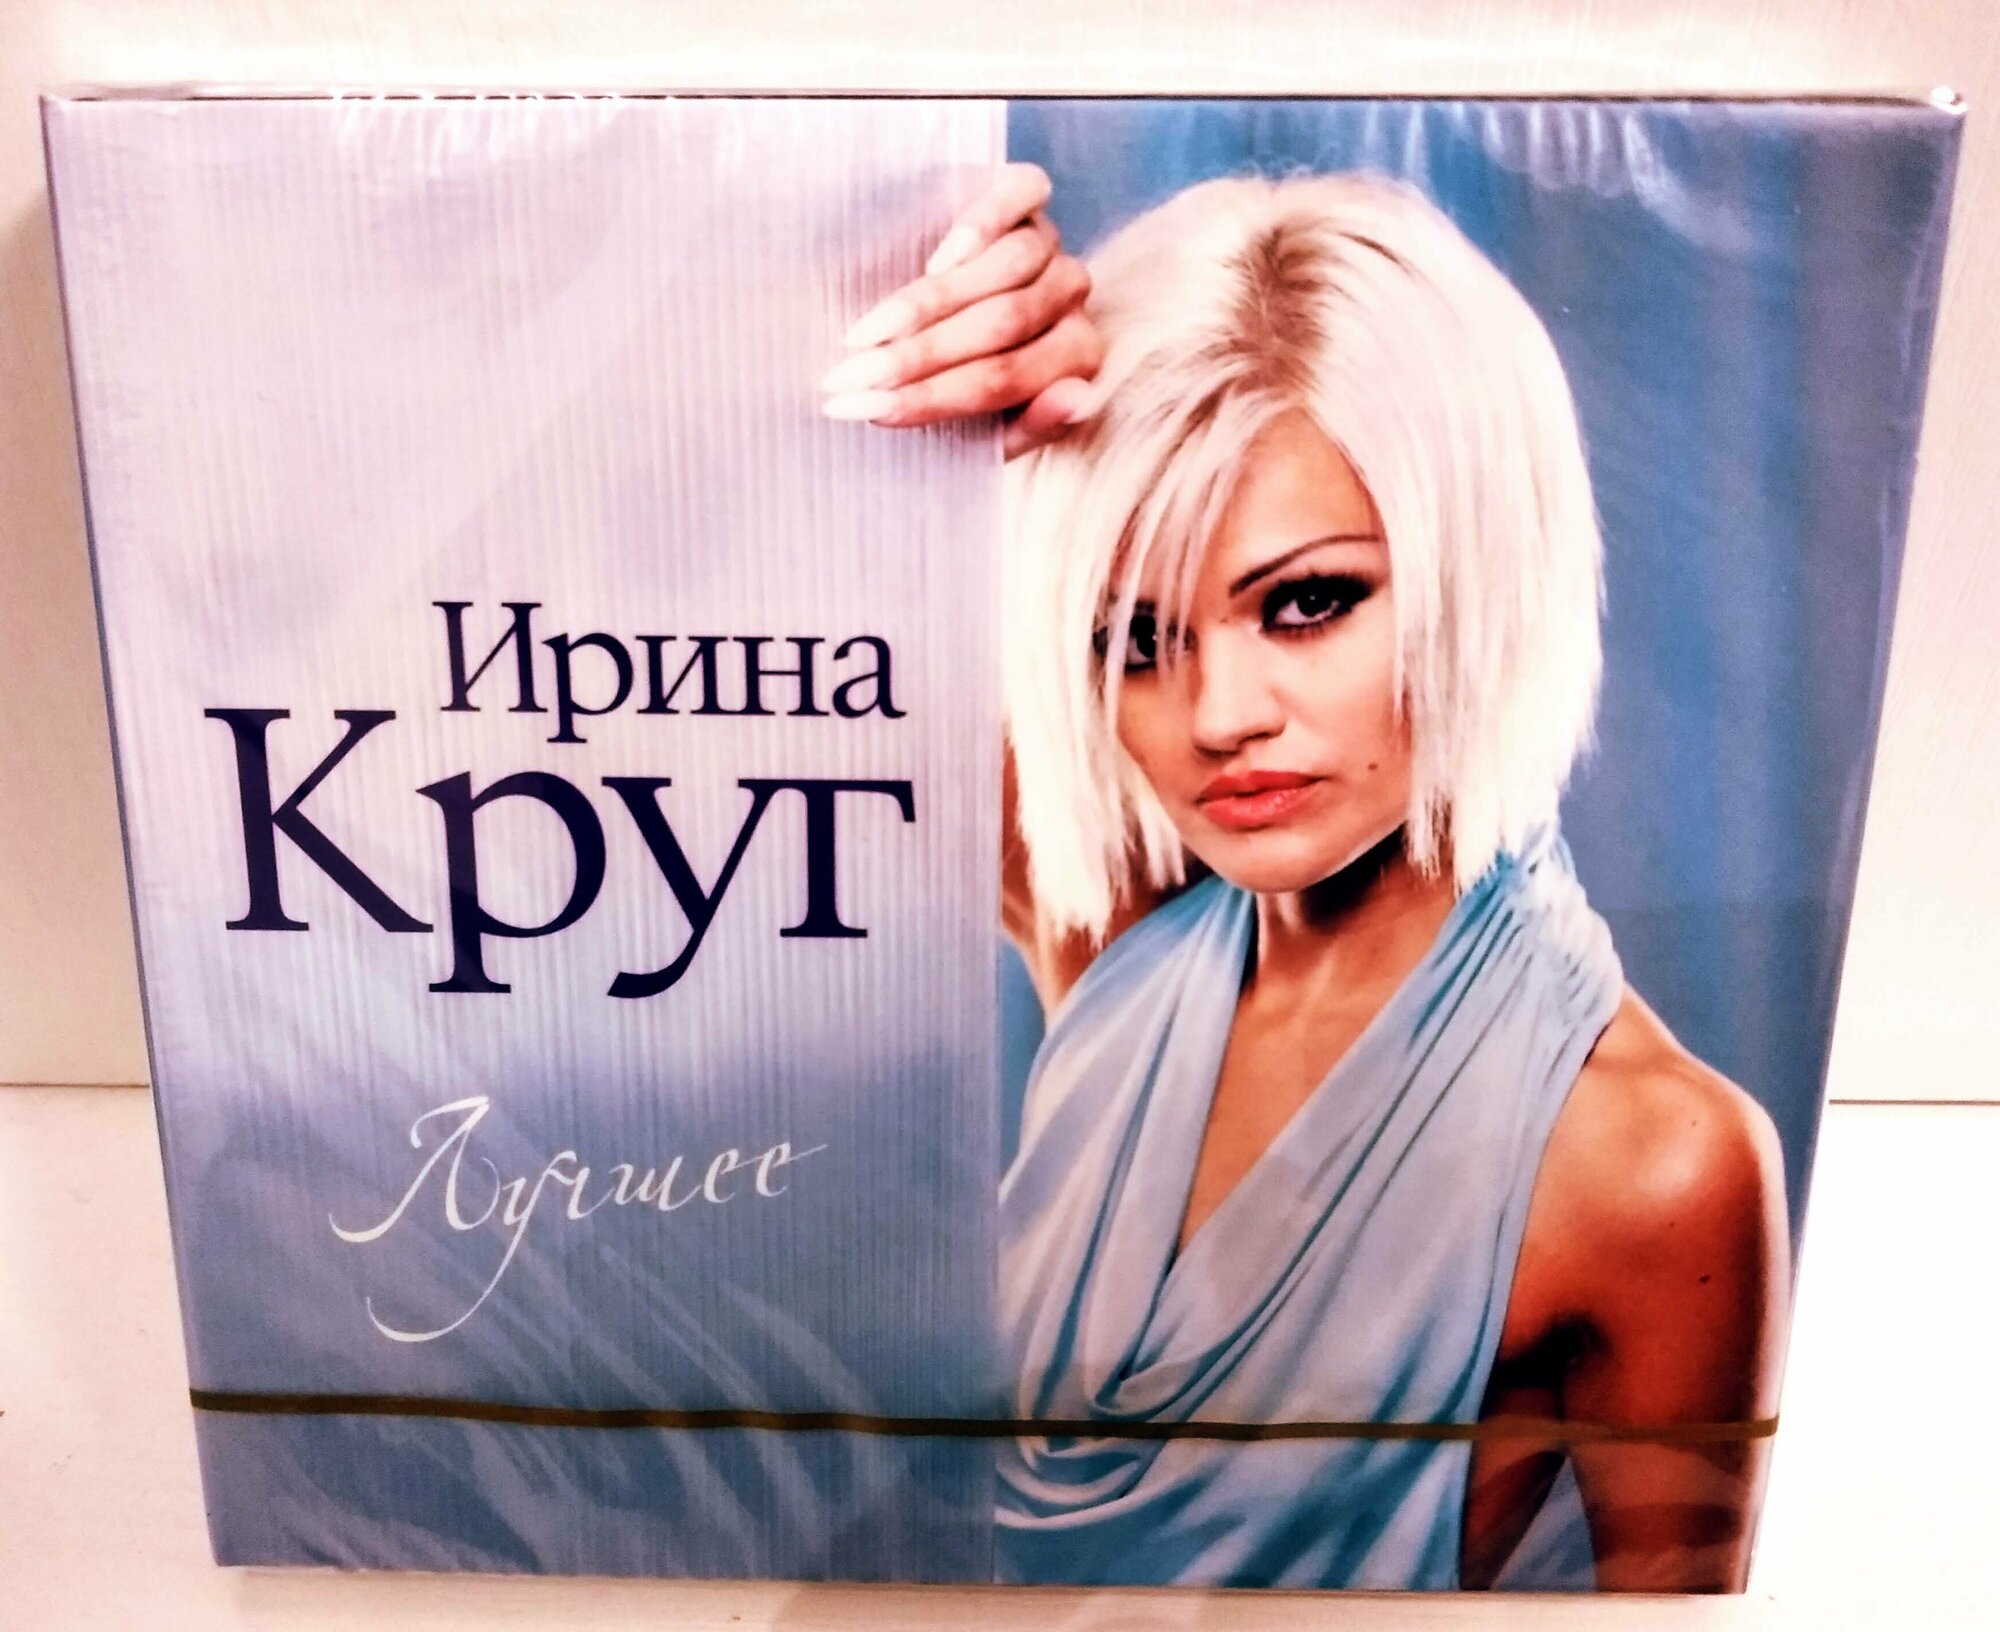 Ирина Круг "Лучшее" 2 CD